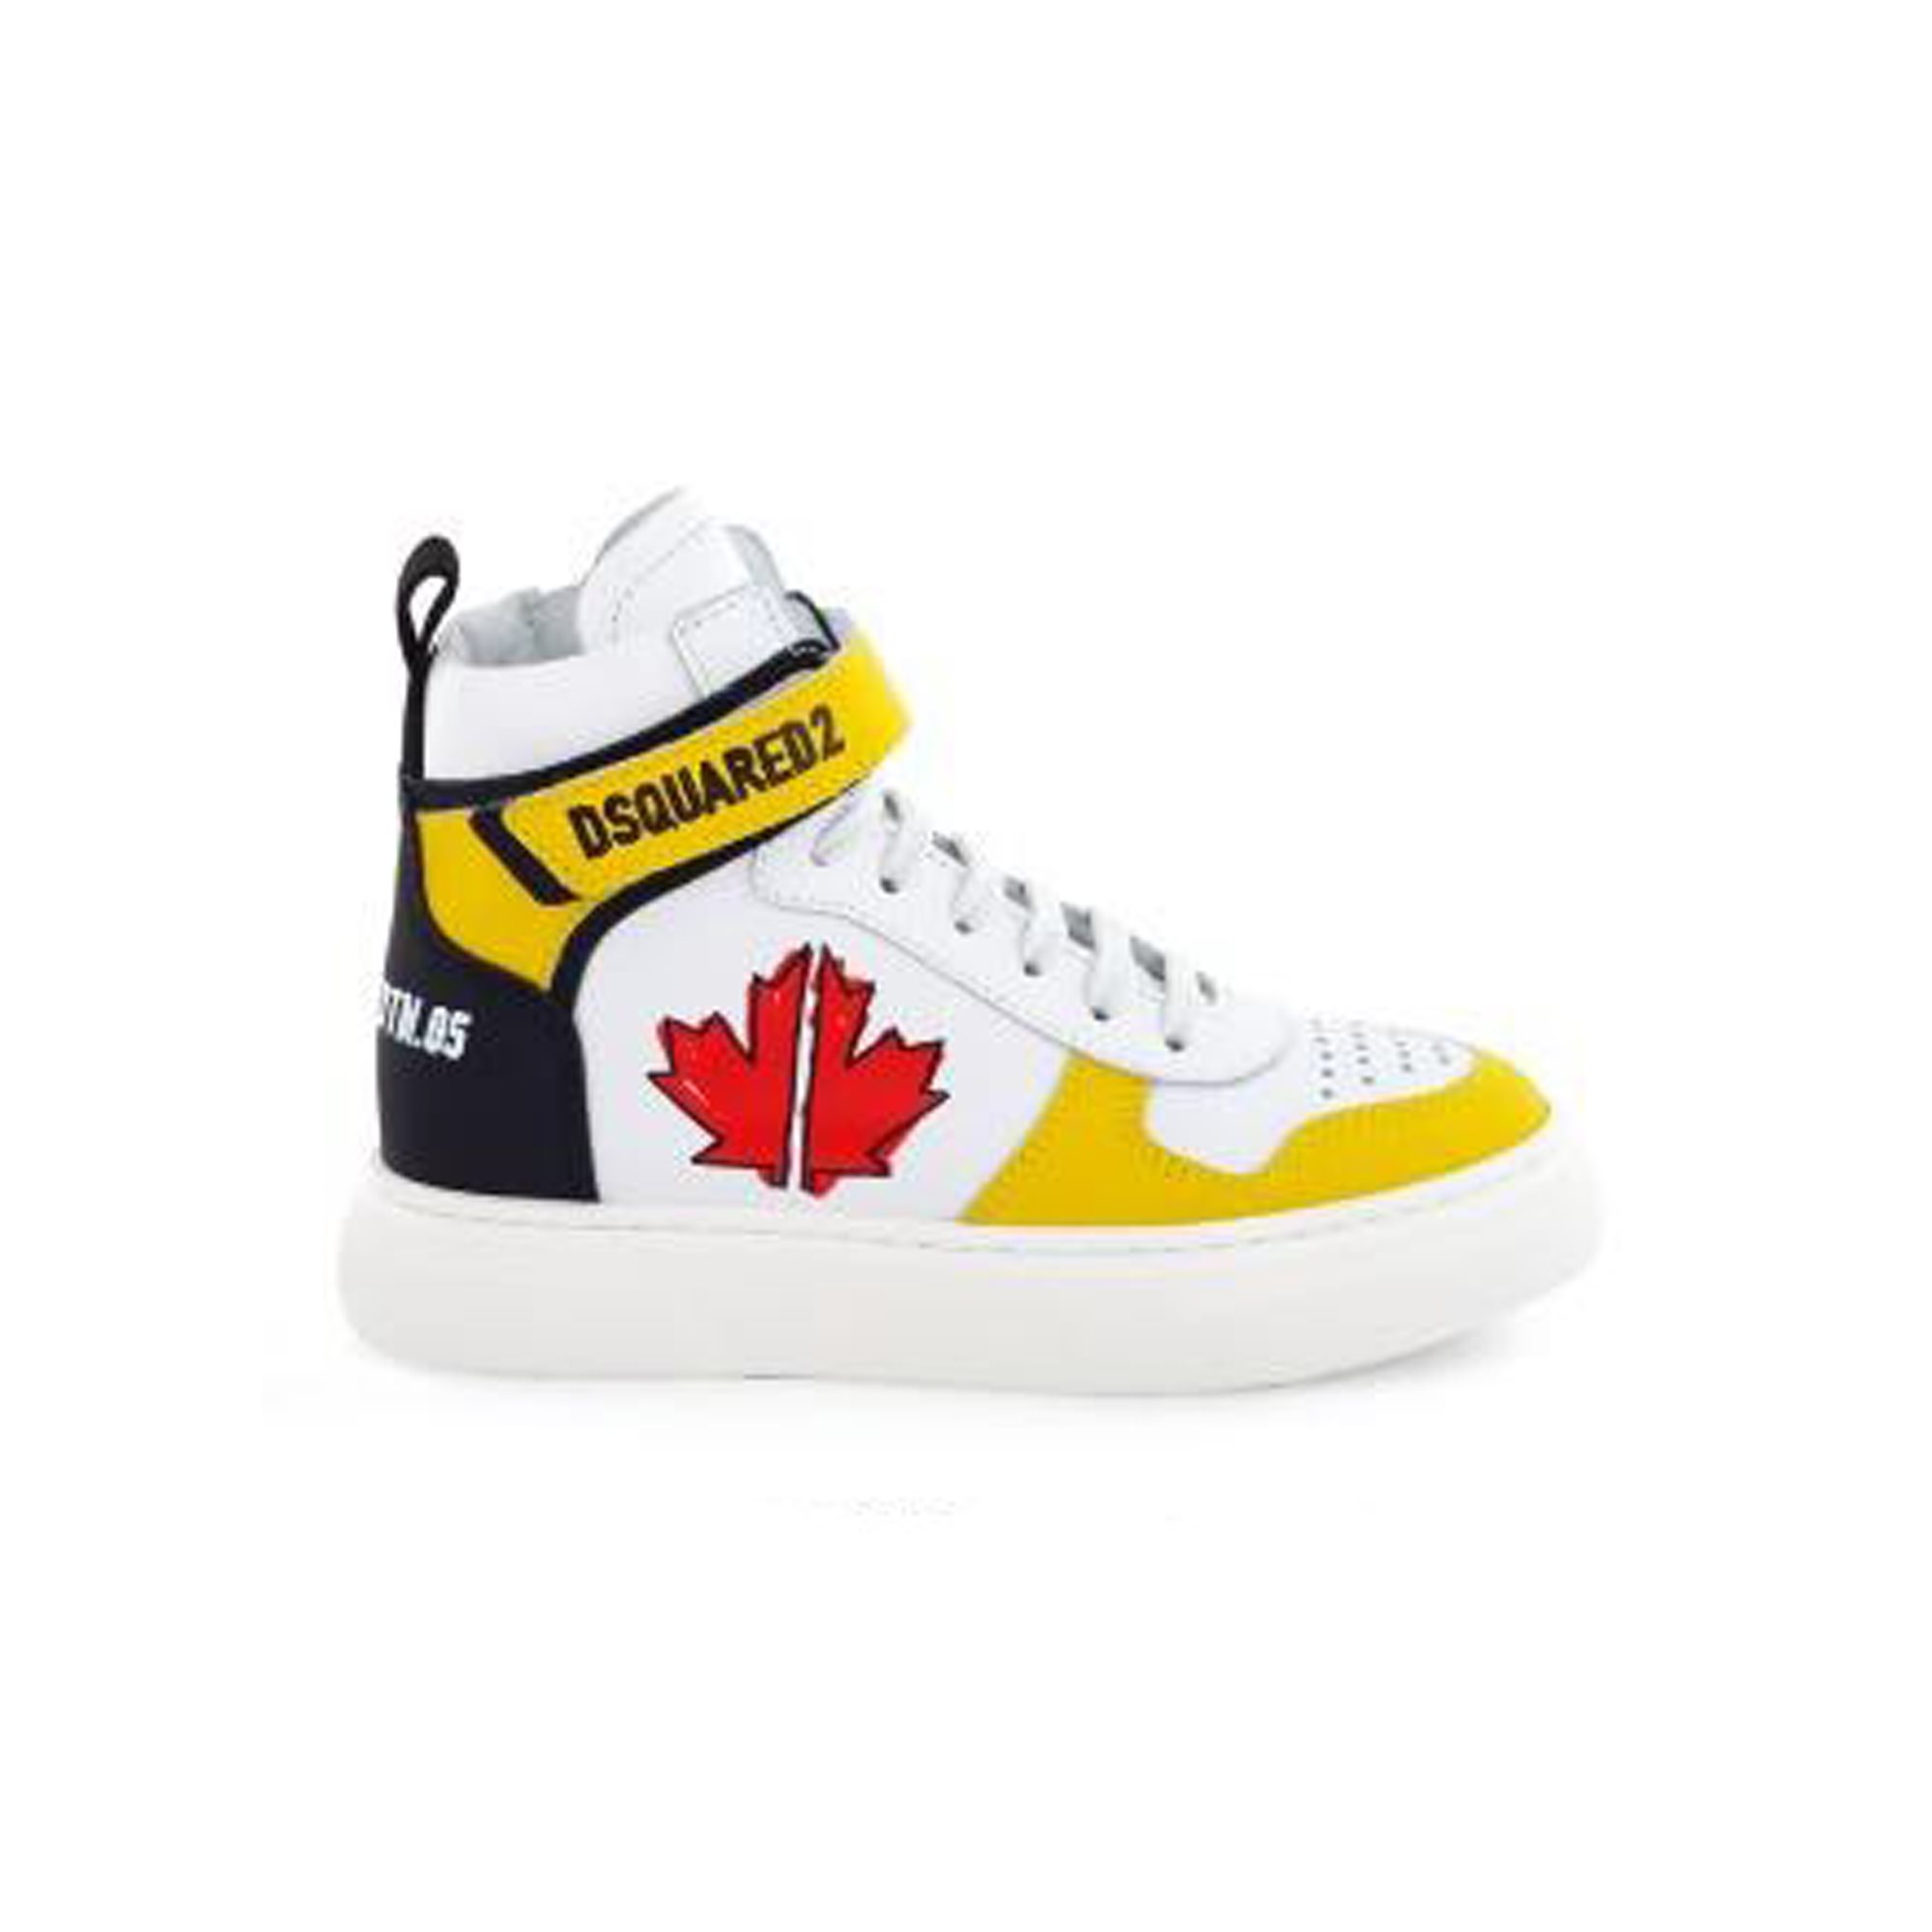 elkaar Blauwe plek bescherming Producten - D2 sneaker hightop leaf geel - La Boite - Kids fashion & shoes